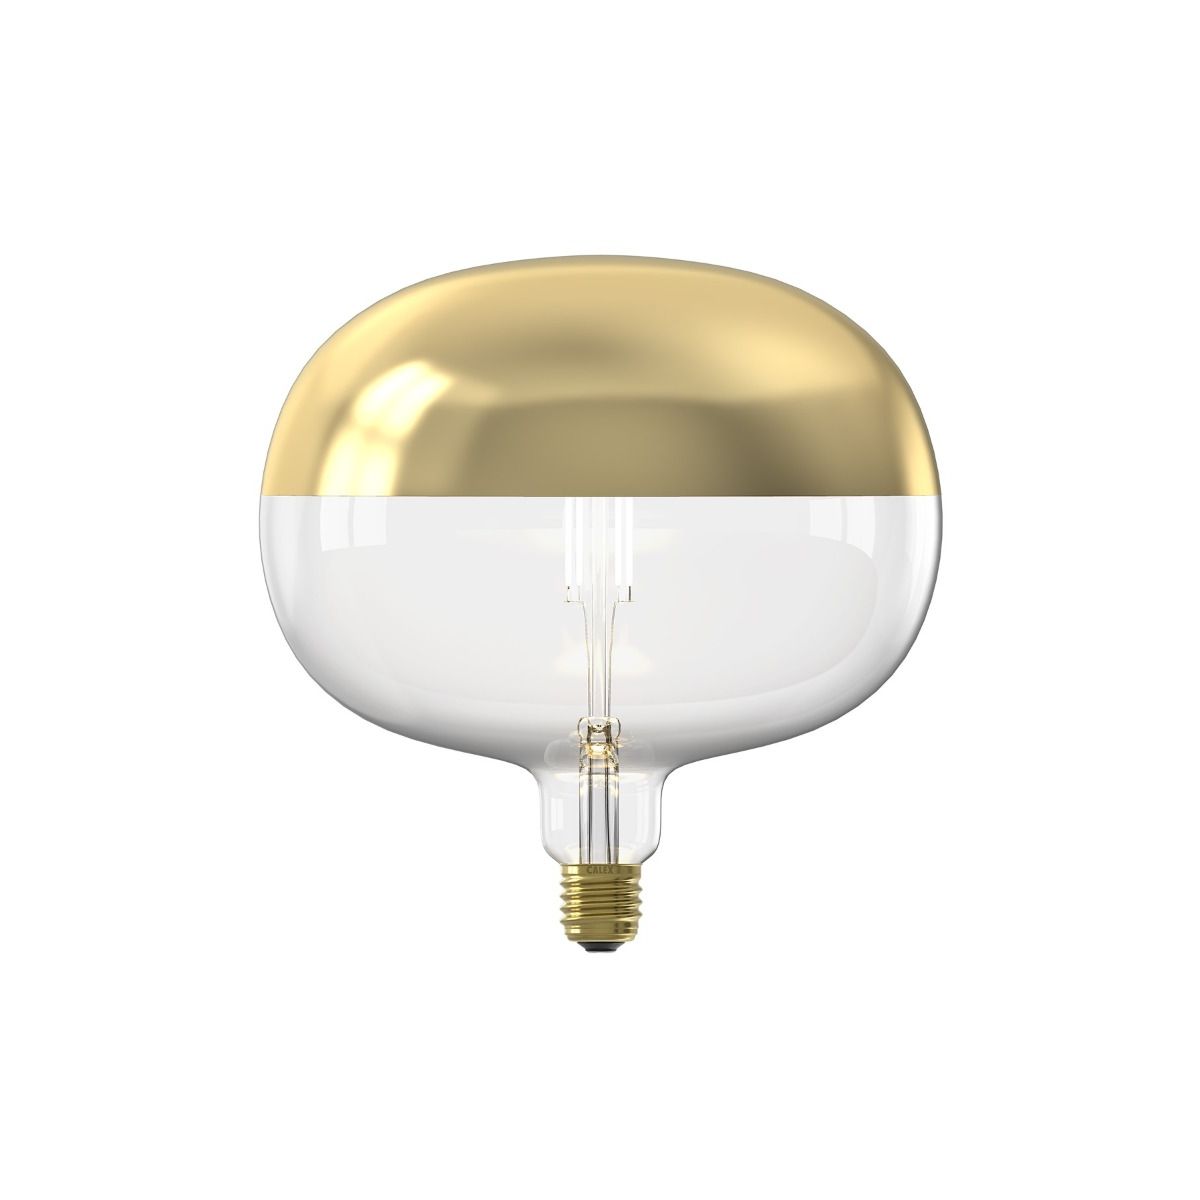 Retoucheren op tijd reparatie Calex Boden Top Mirror LED lamp - Ø 22 x 22,5 cm - E27 - 6W dimbaar - 1800K  - goud | Lichtkoning